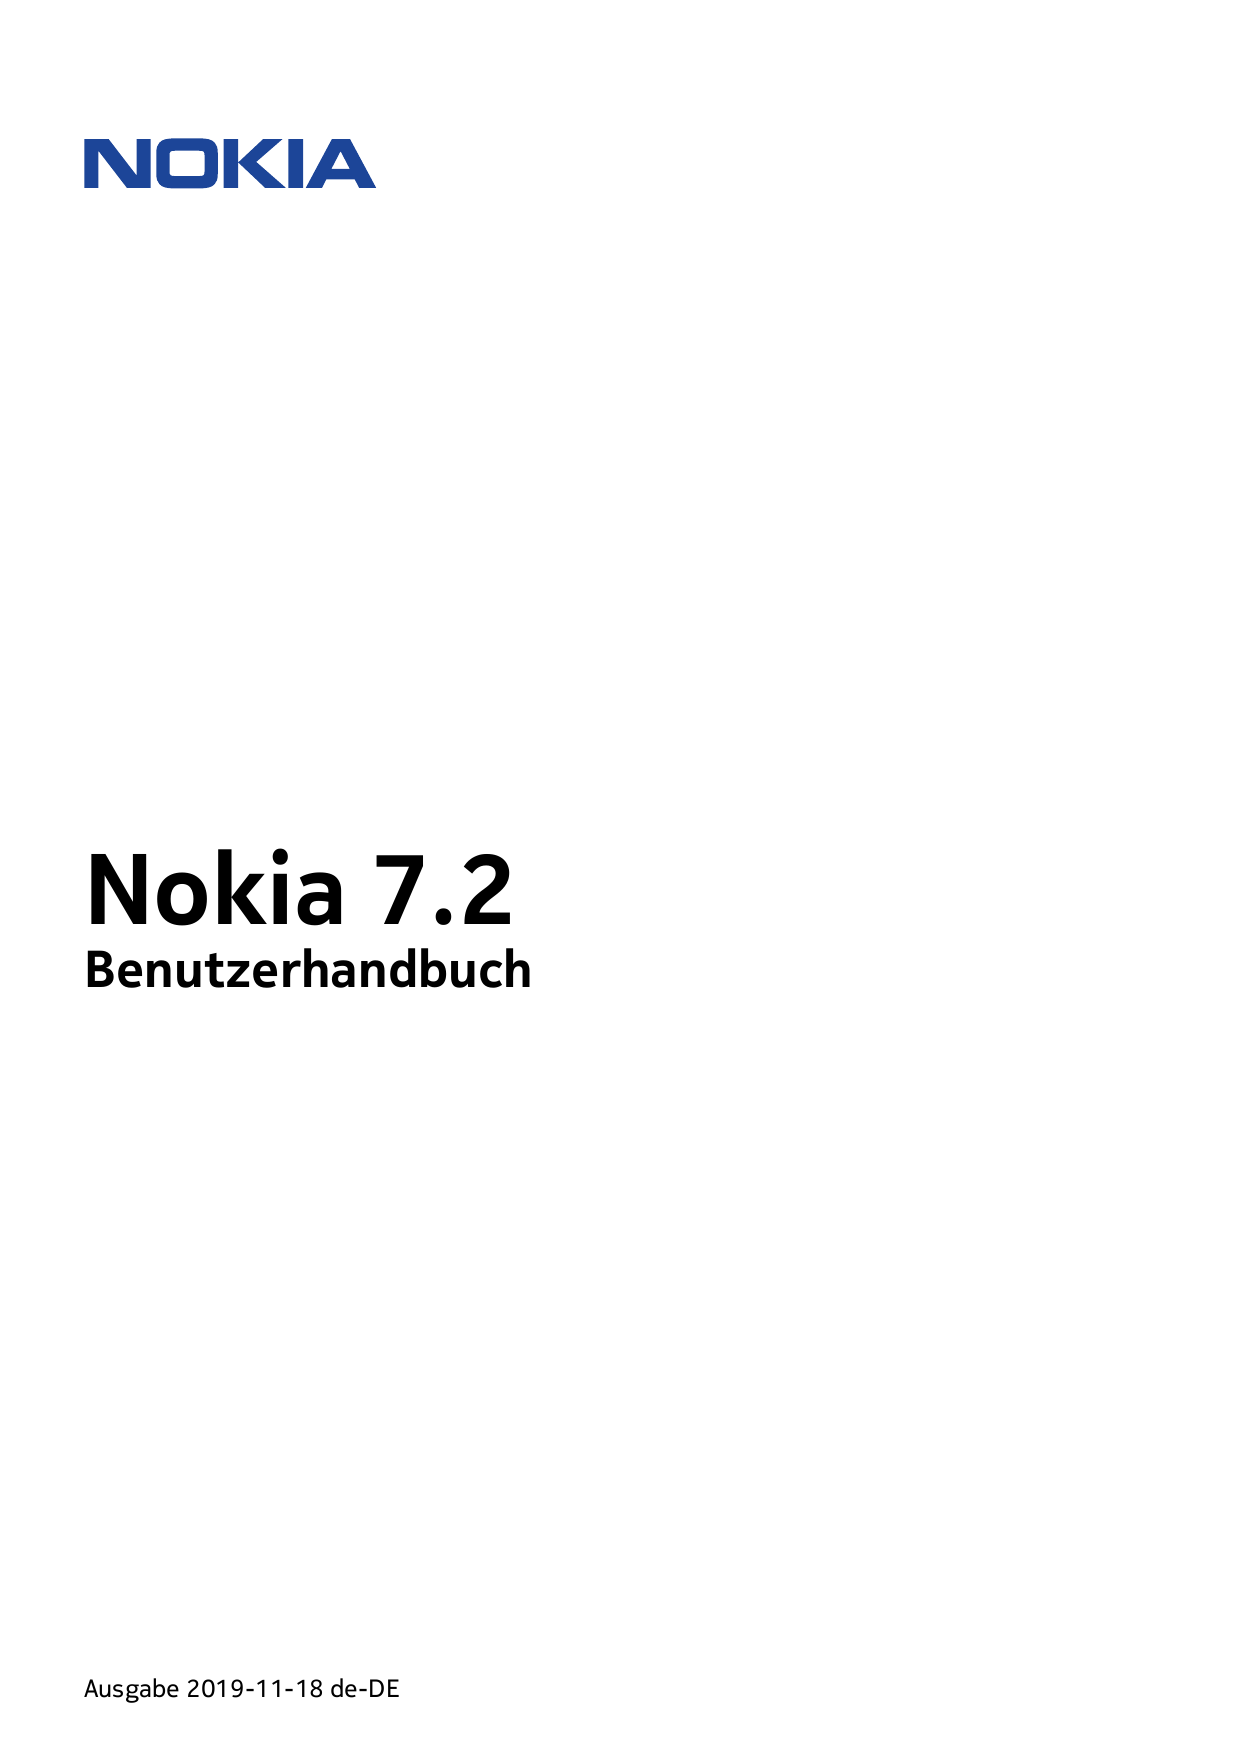 Nokia 7.2BenutzerhandbuchAusgabe 2019-11-18 de-DE